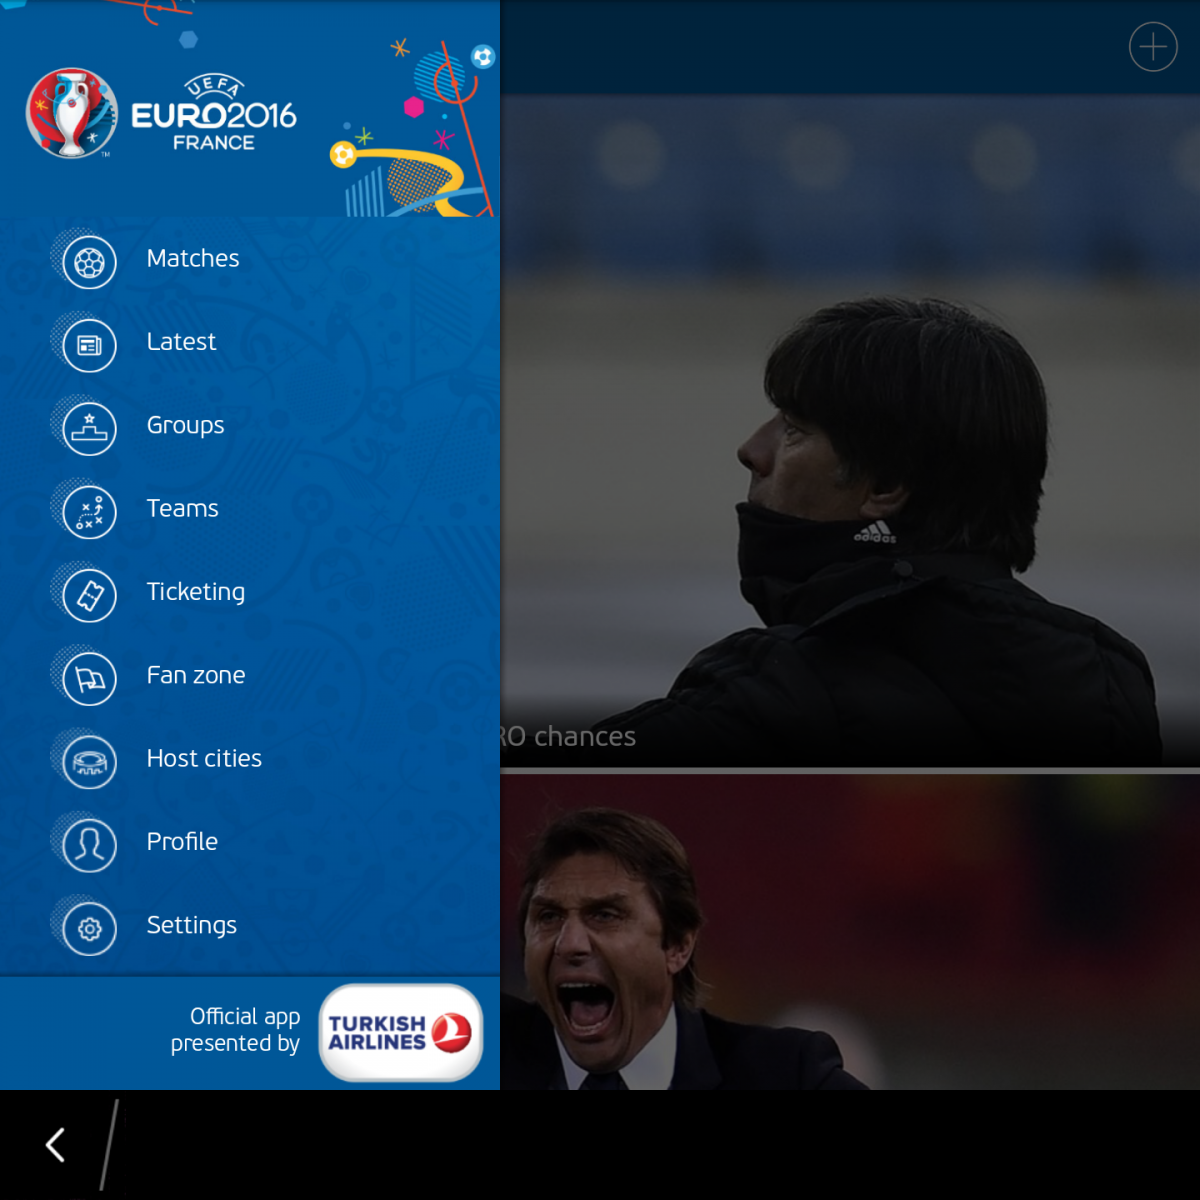 "UEFA EURO 2016 Official App" Ứng dụng giúp cập nhật thông tin về Euro 2016